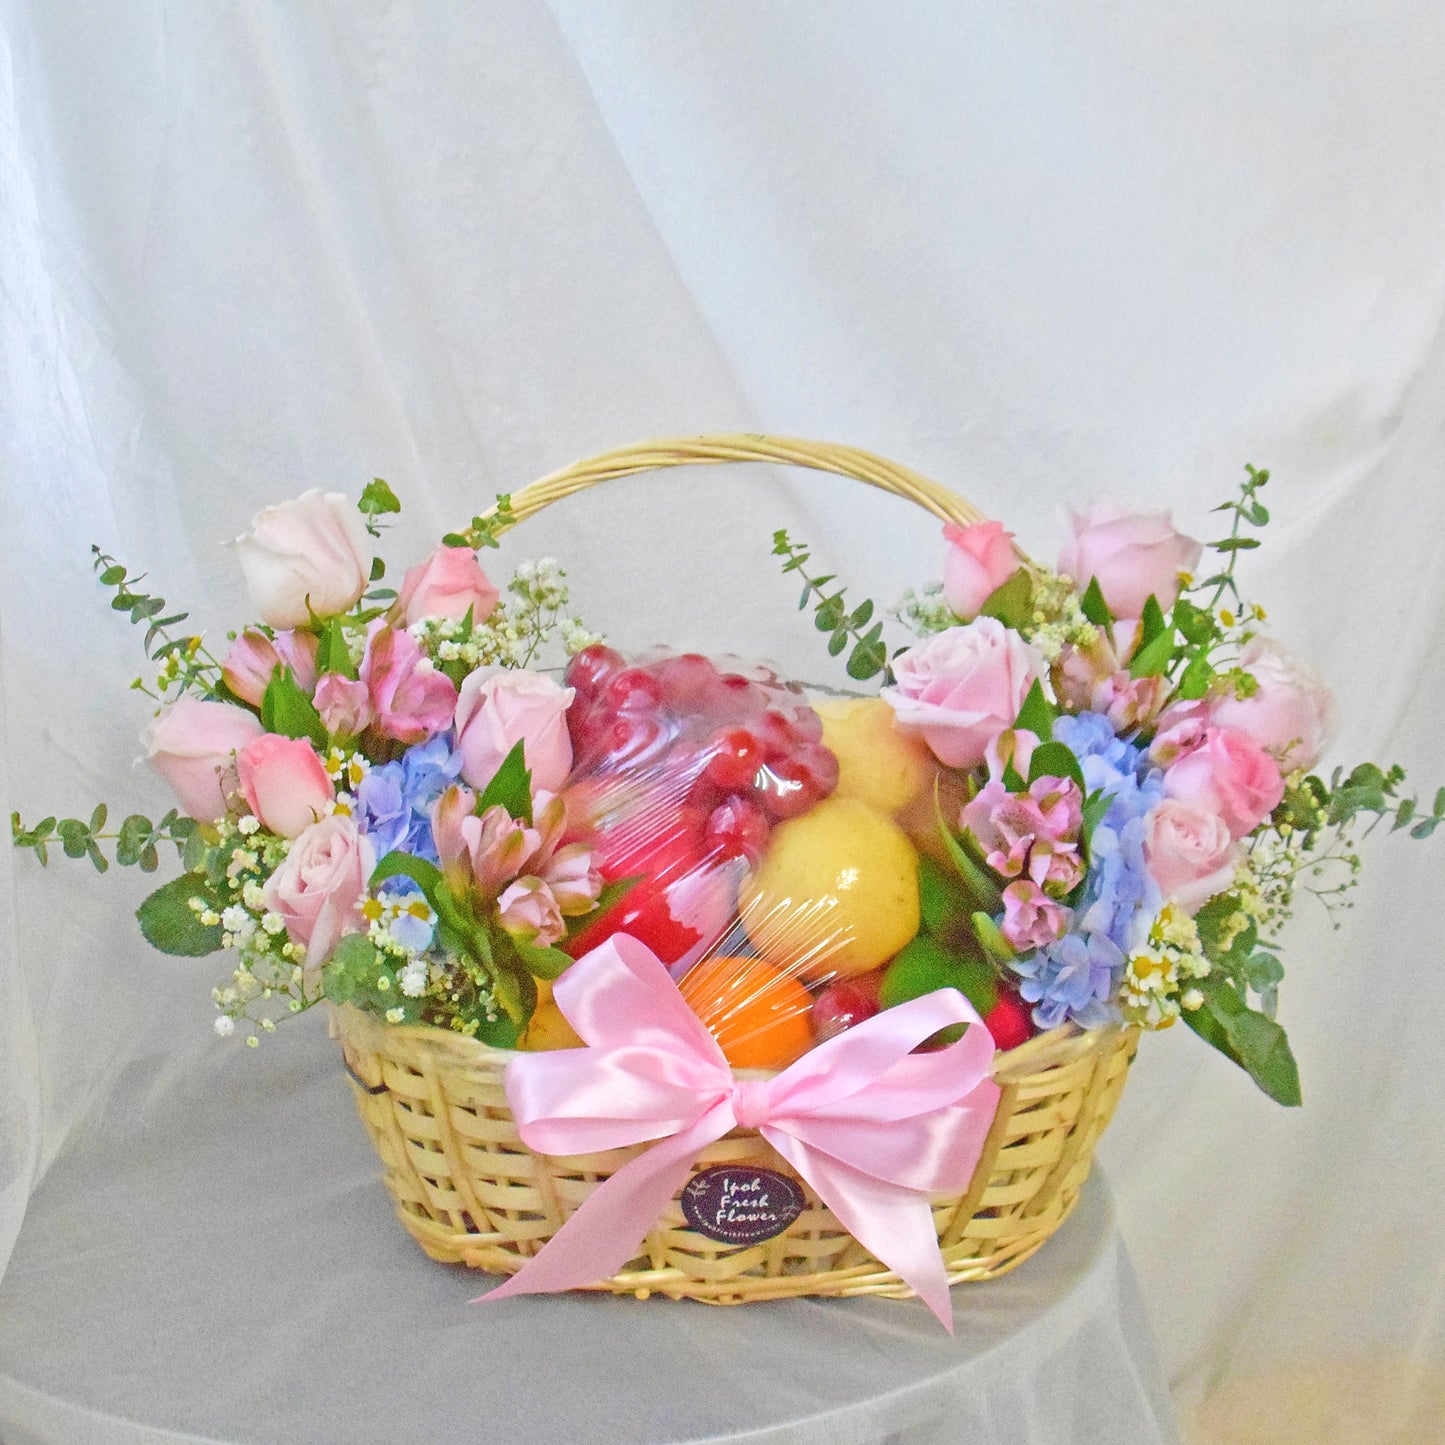 Fruit Basket Delivery| Wonderful Wellness